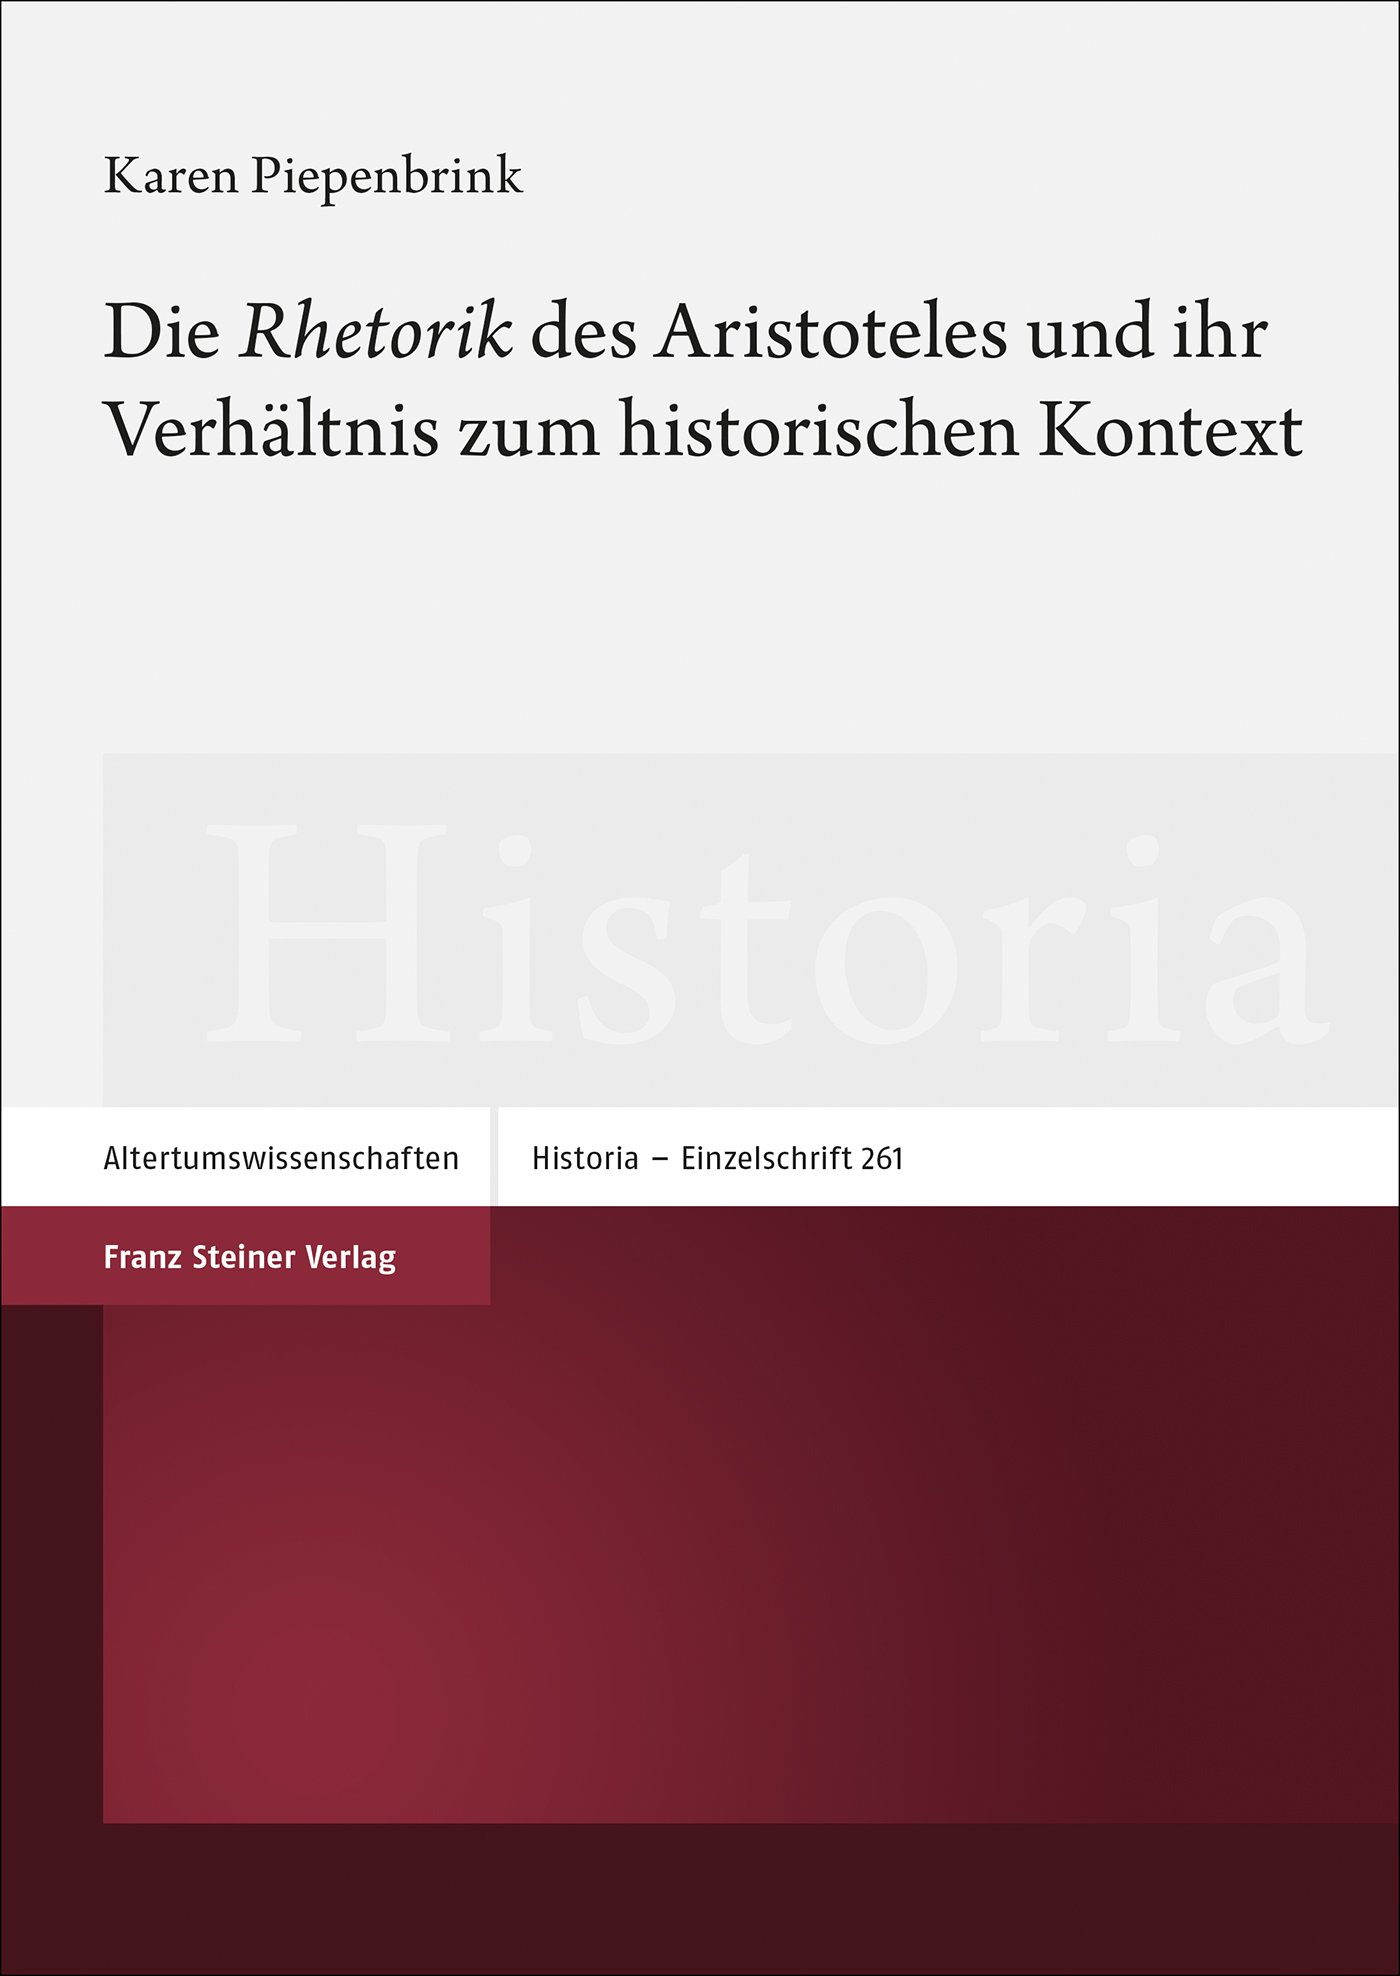 Die „Rhetorik“ des Aristoteles und ihr Verhältnis zum historischen Kontext